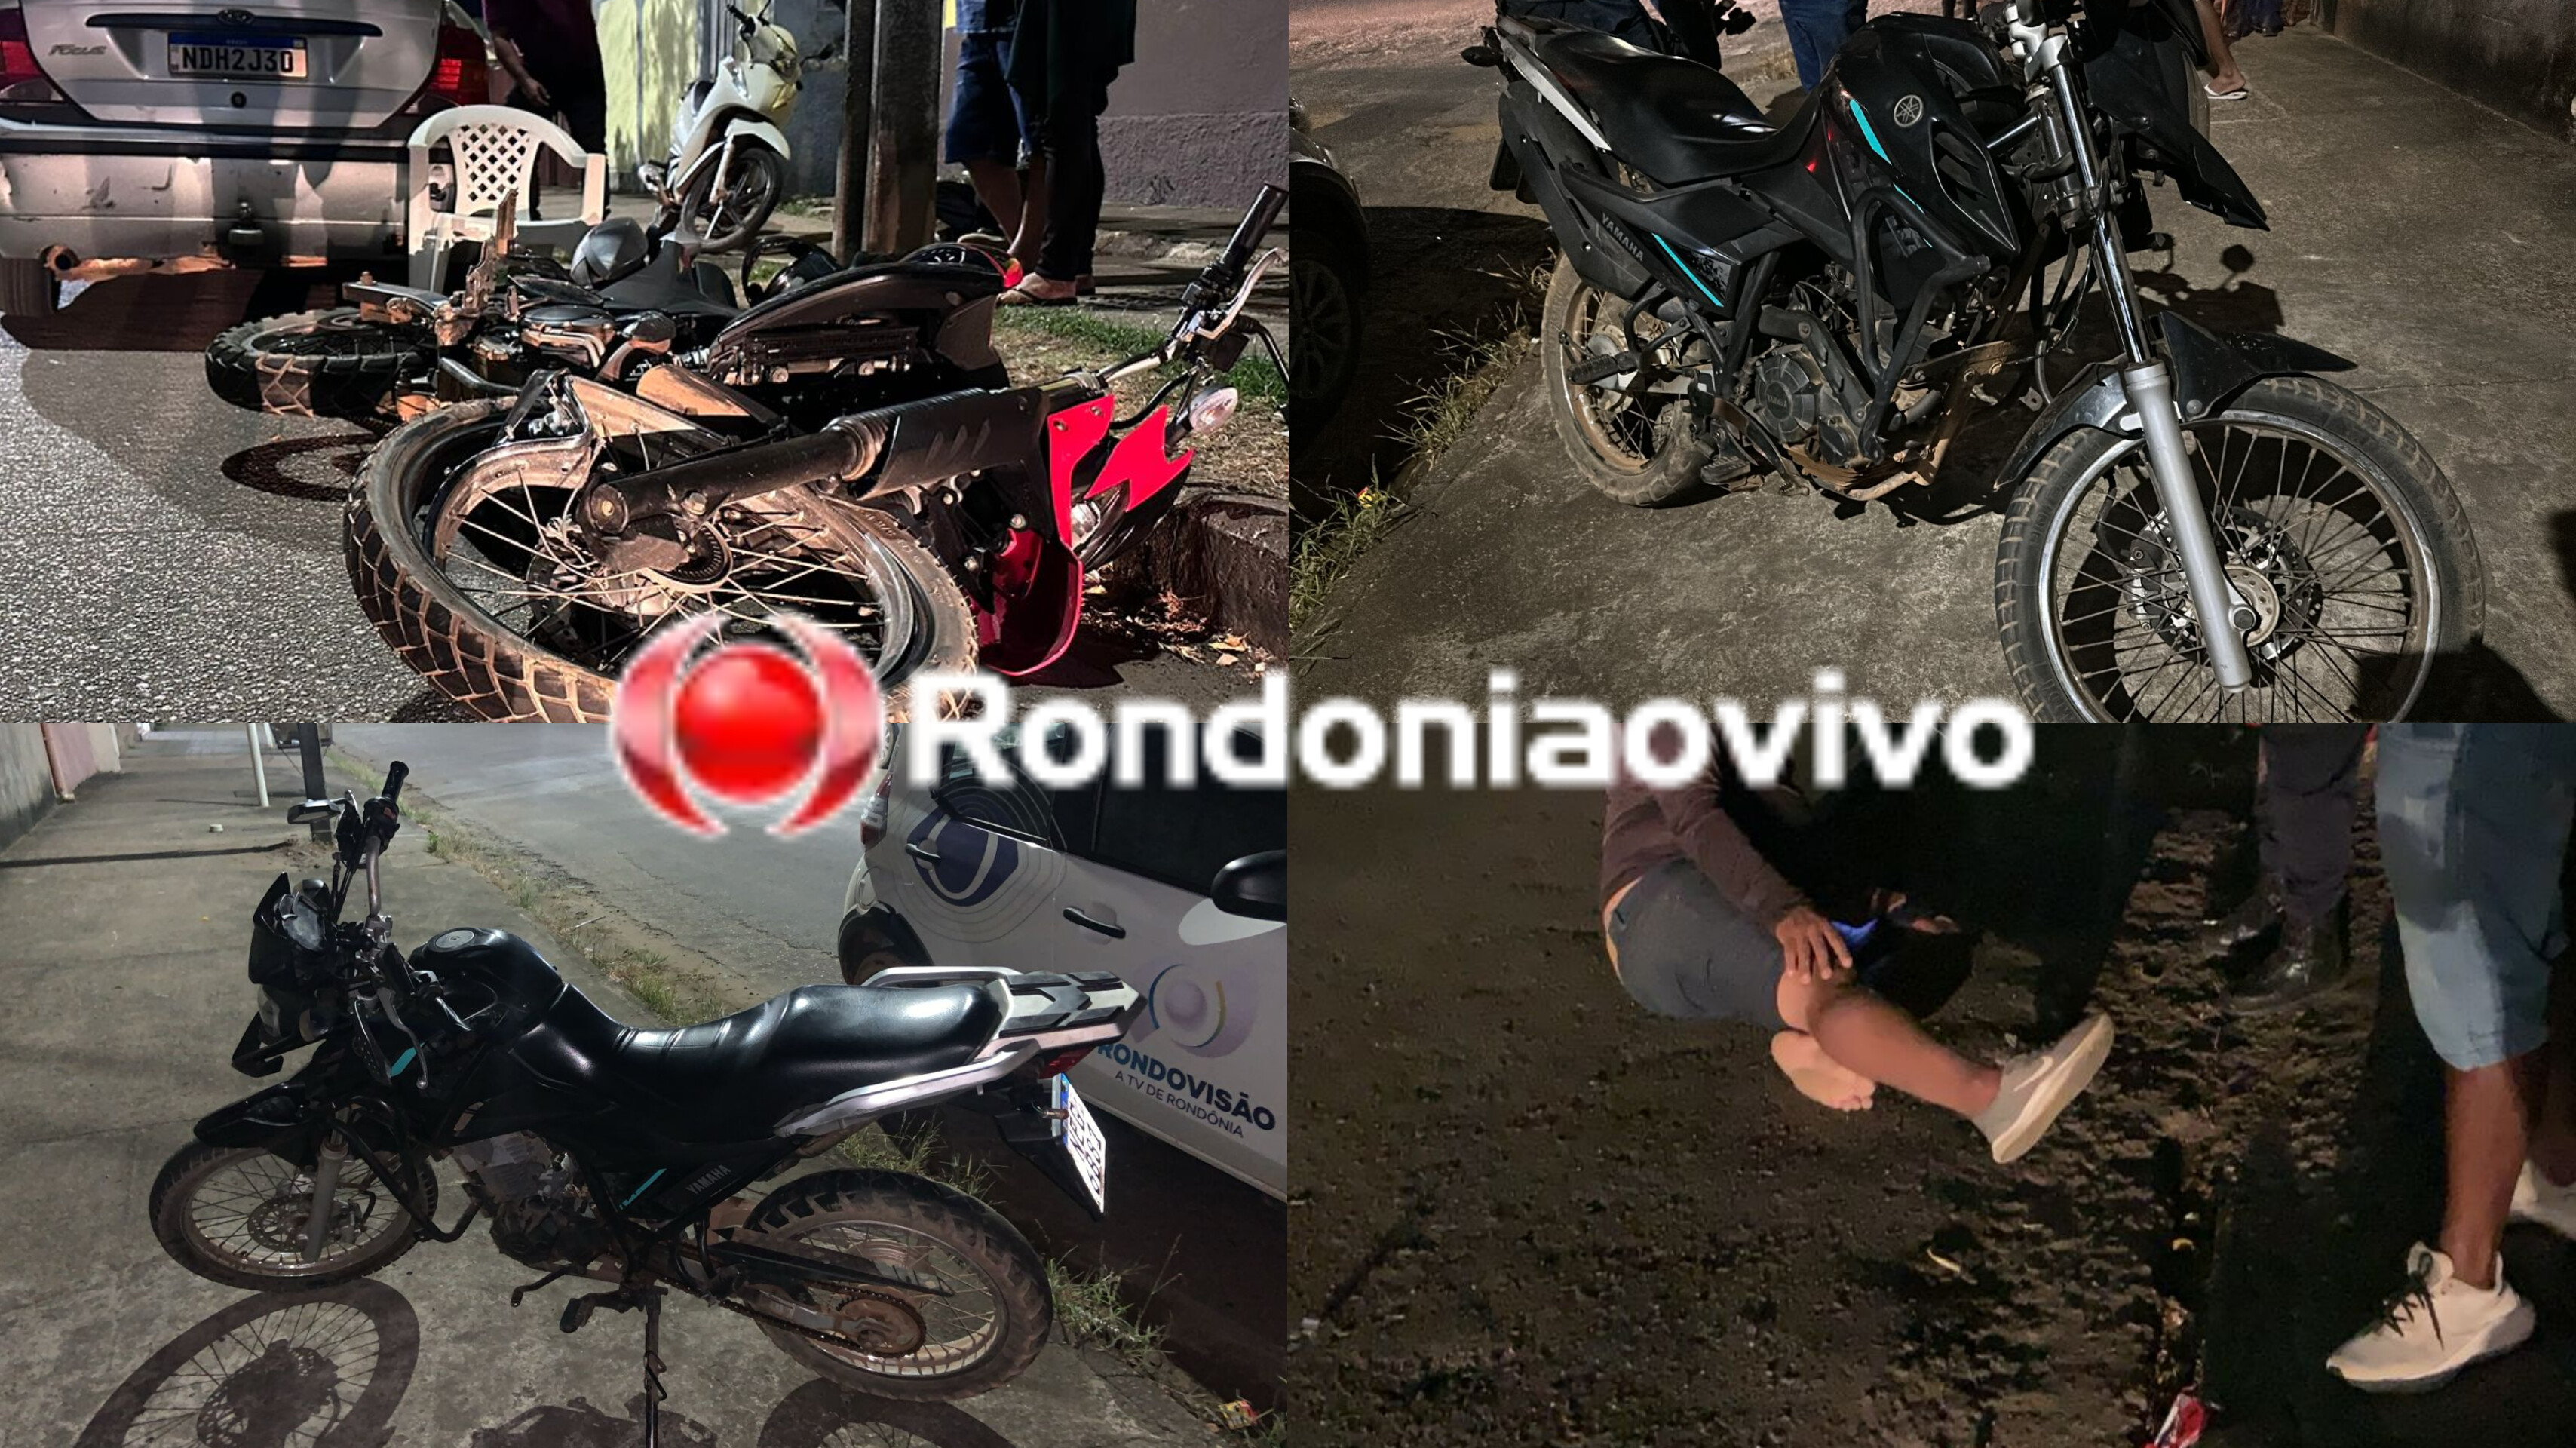 URGENTE: Acidente envolvendo três motocicletas deixa quatro feridos 